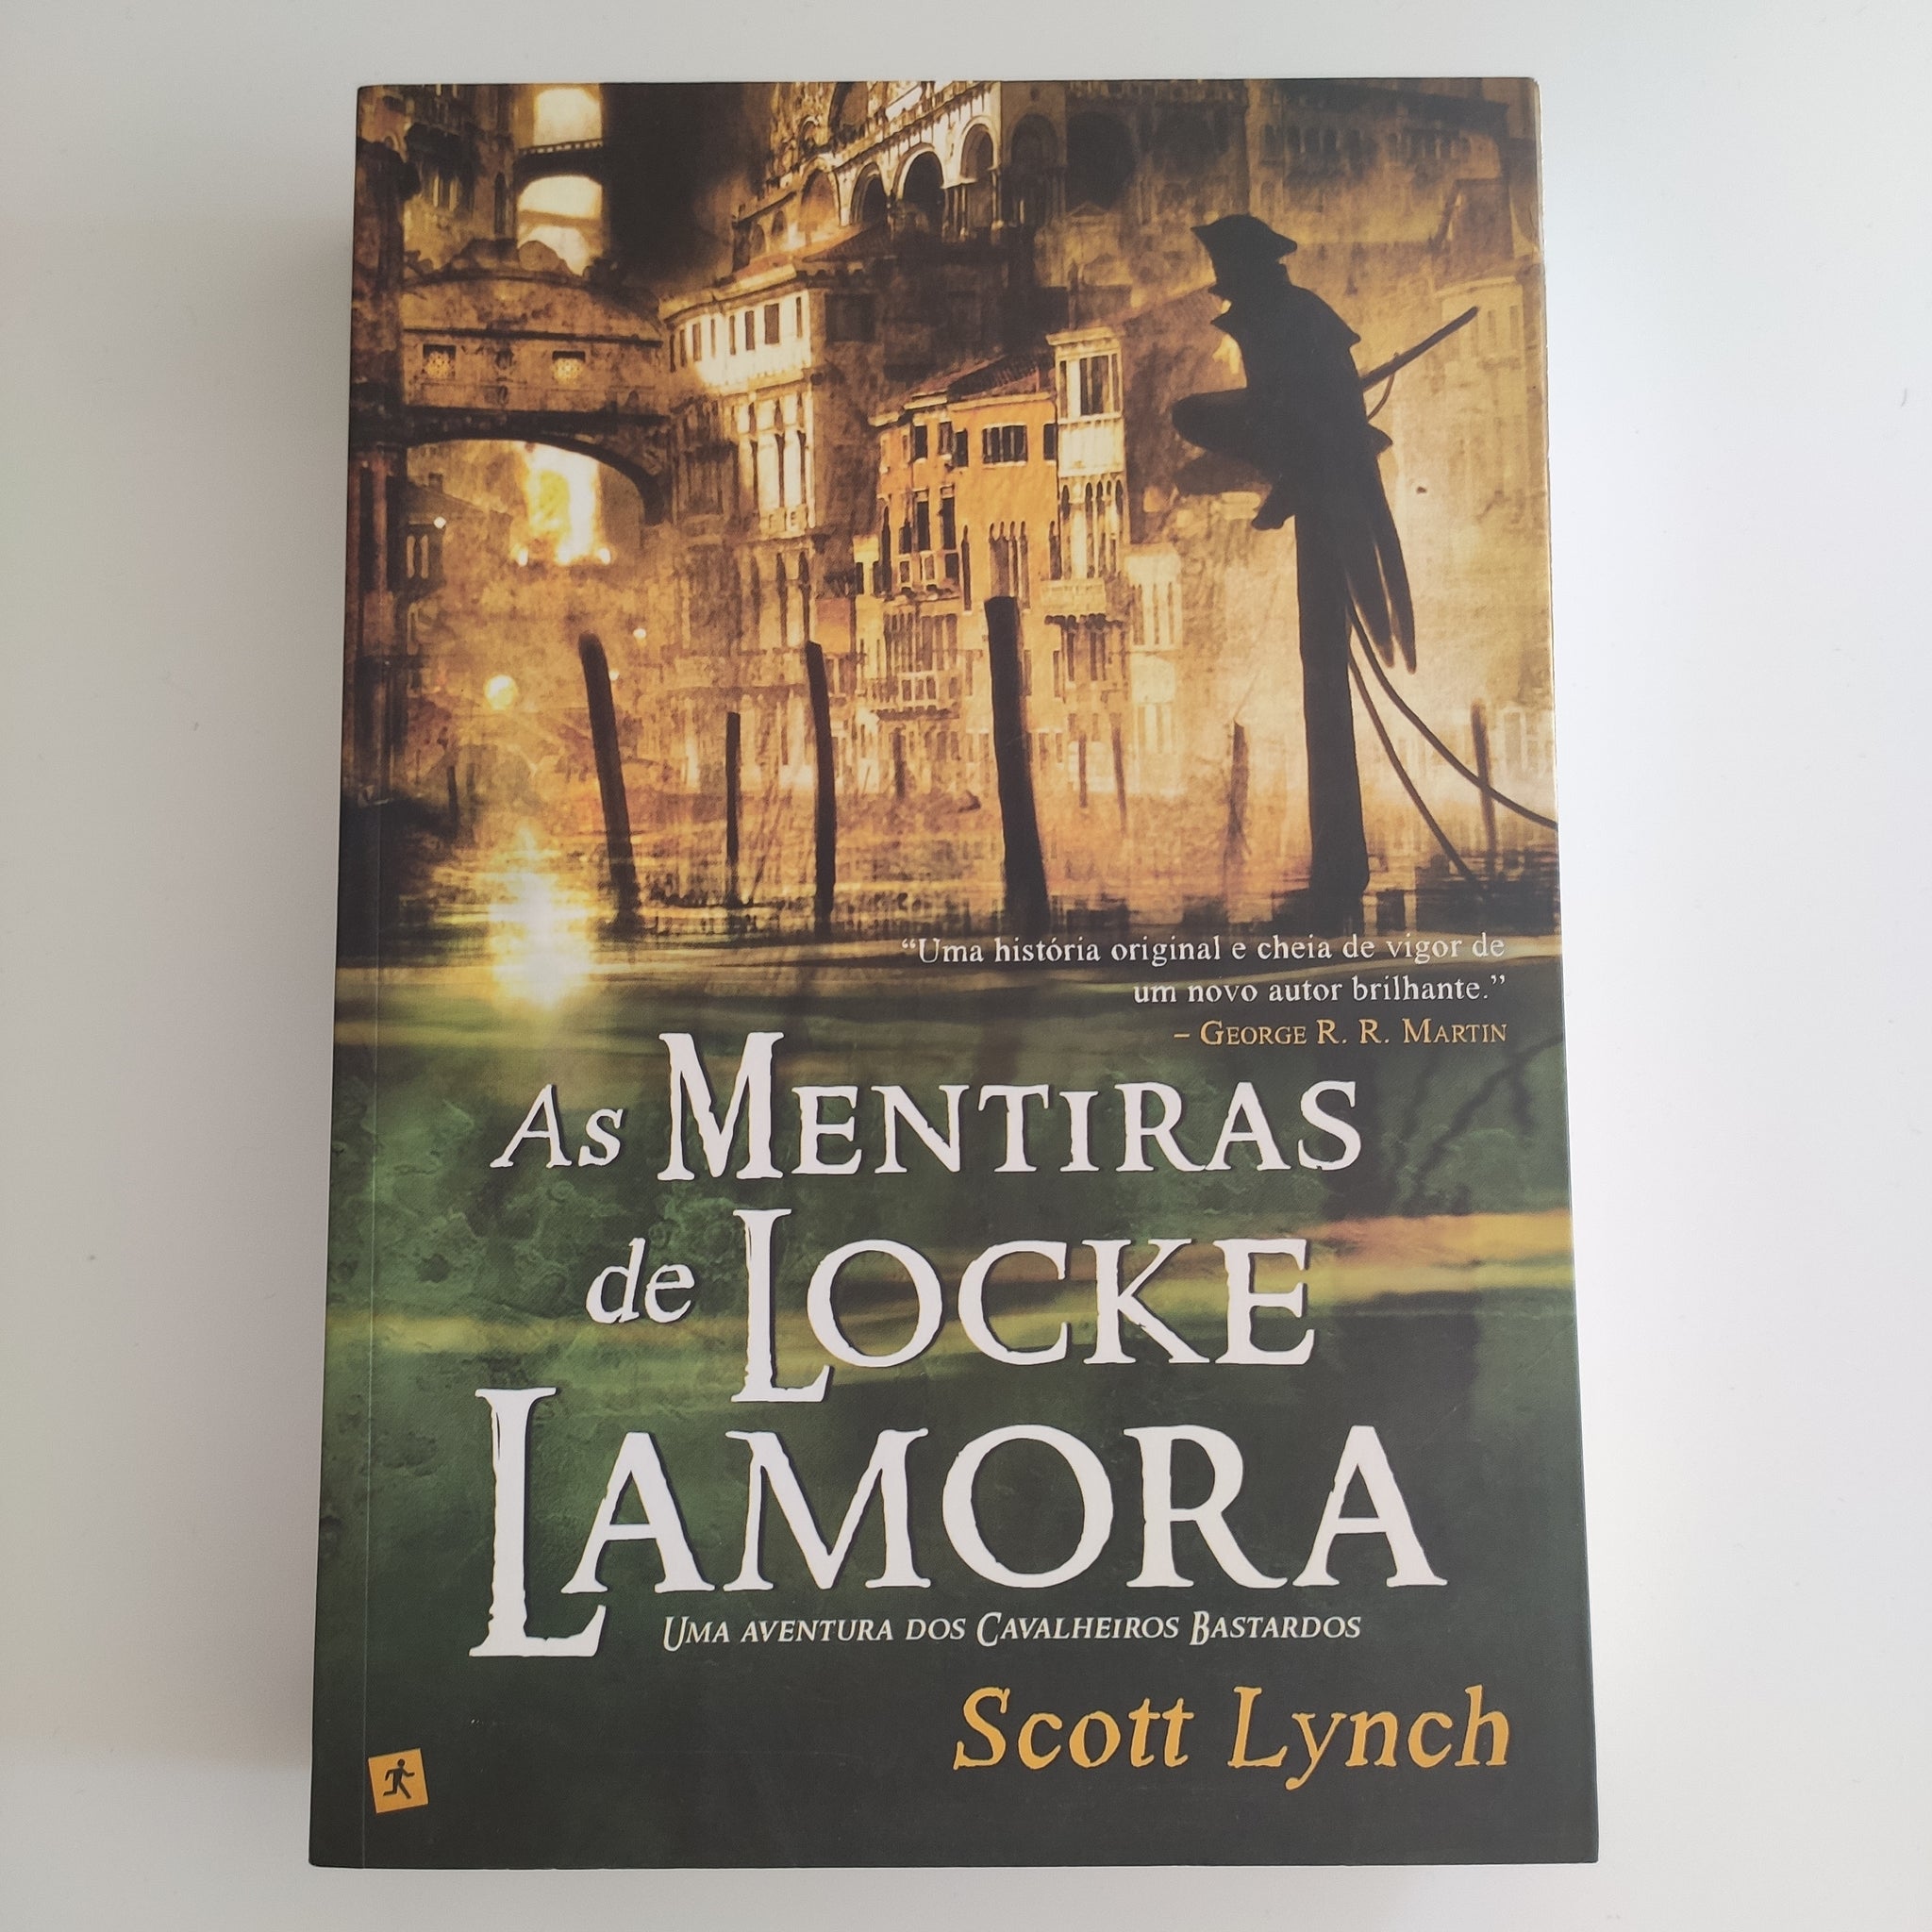 As Mentiras de Locke Lamora - Uma aventura de cavalheiros bastardos